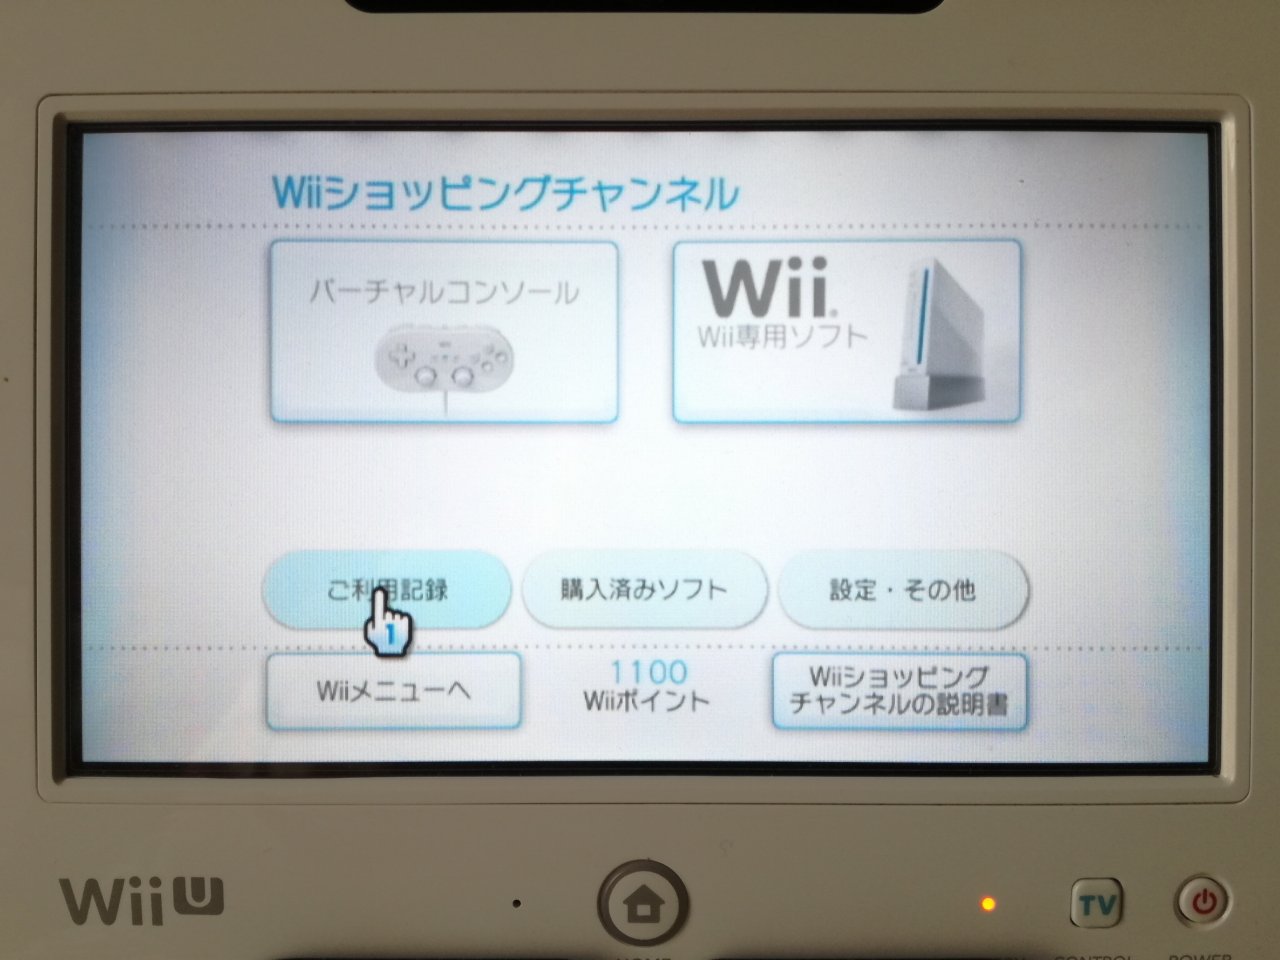 Wiiショッピングチャンネルの残高払い戻し 空想どうでしょう ブログ